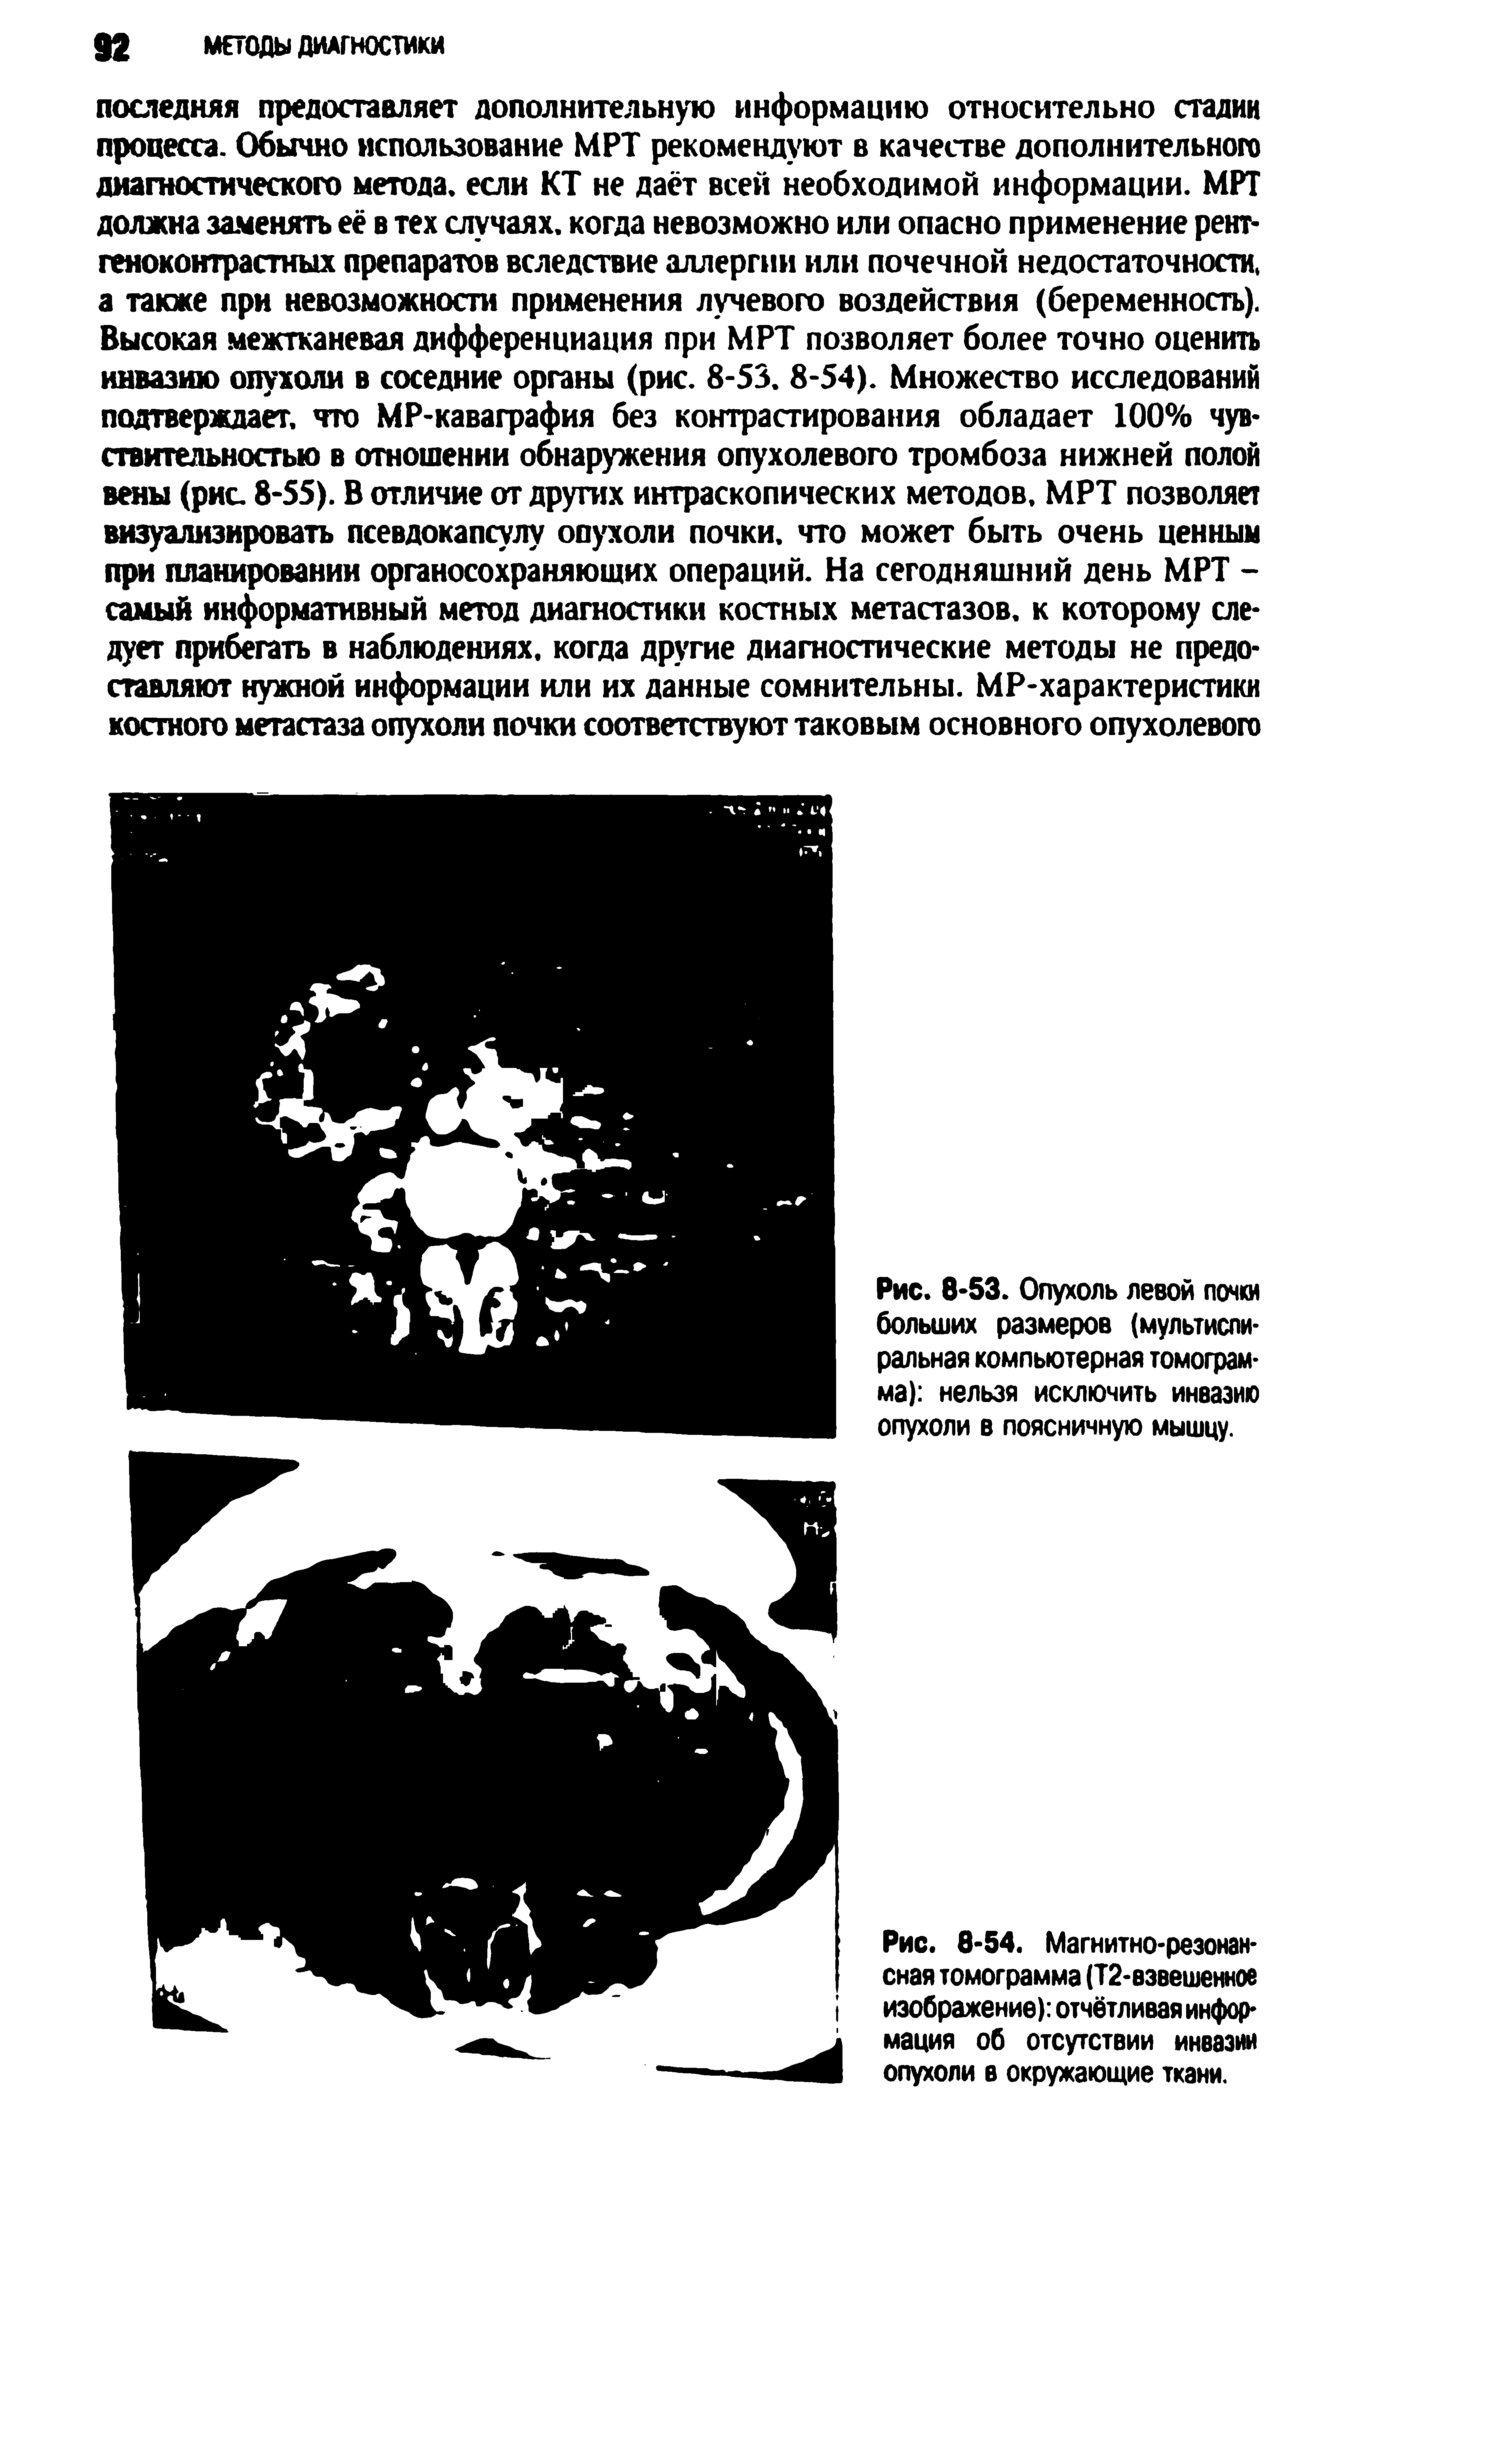 Рис. 8-54. Магнитно-резонансная томограмма (Т2-взвешенное изображение) отчётливая информация об отсутствии инвазии опухоли в окружающие ткани.